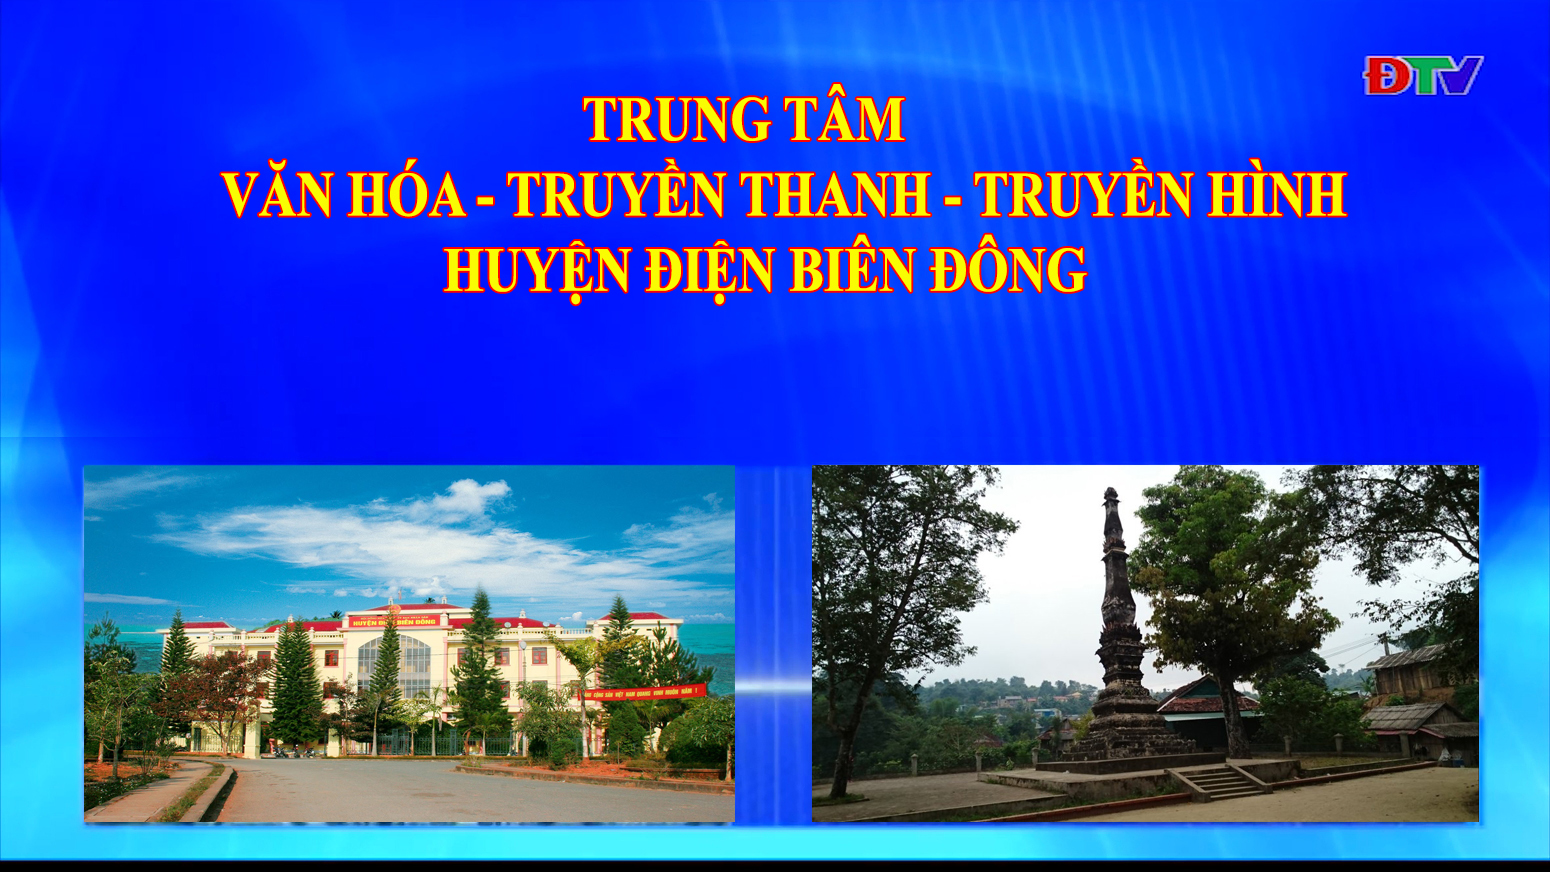 Trung tâm VH-TTTH huyện Điện Biên Đông (Ngày 21-11-2020)